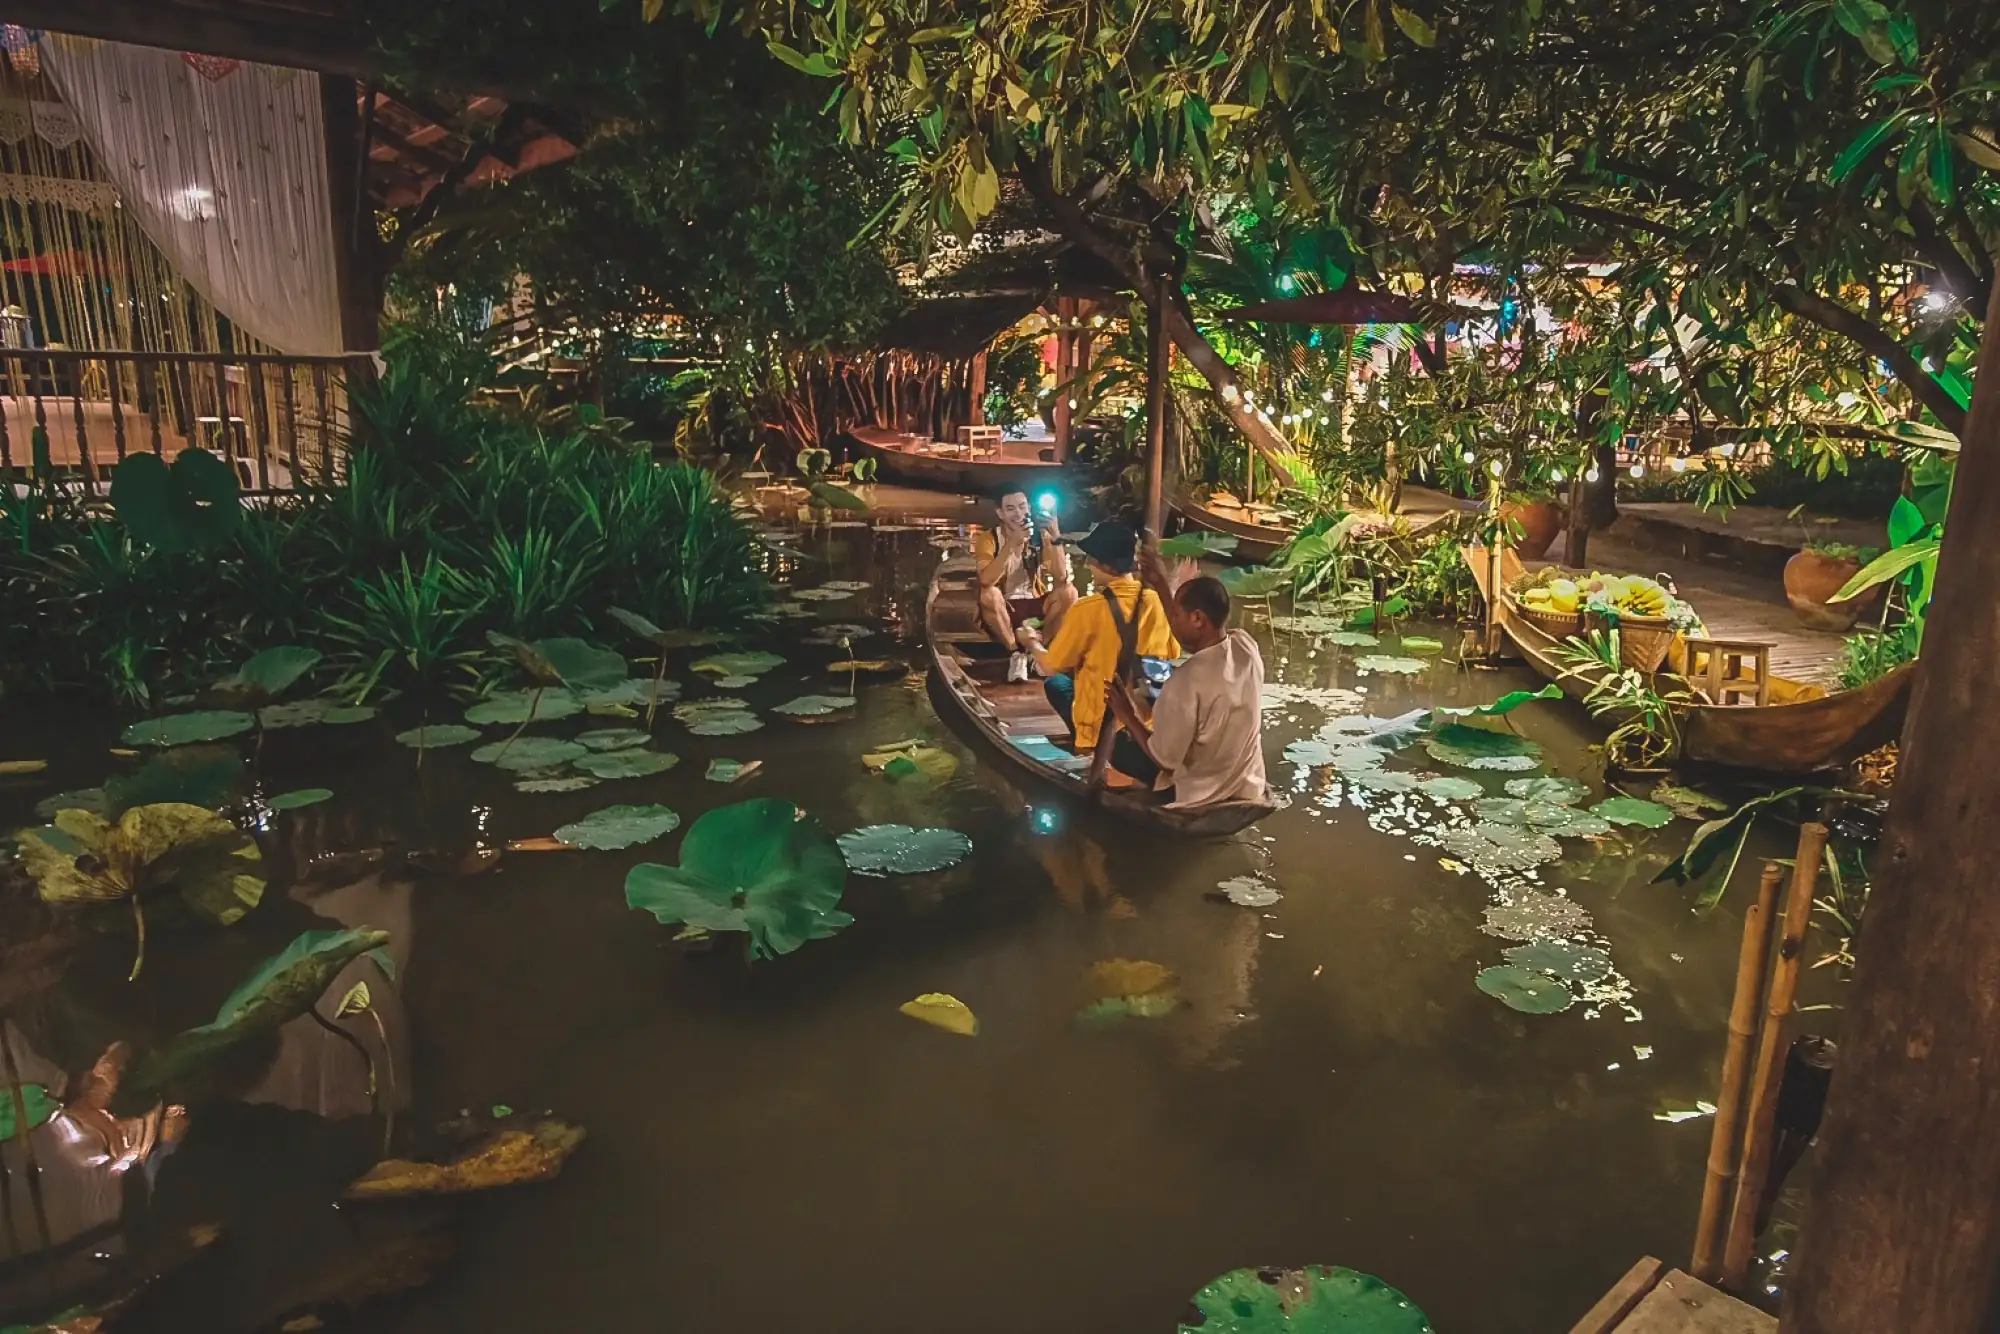 「暹罗天使剧场」是泰国最精彩的奇幻声光大秀，让观众更深入了解泰国的历史文化、民间信仰和节庆活动（图片来源：Facebook@adminsiamniramit  ）